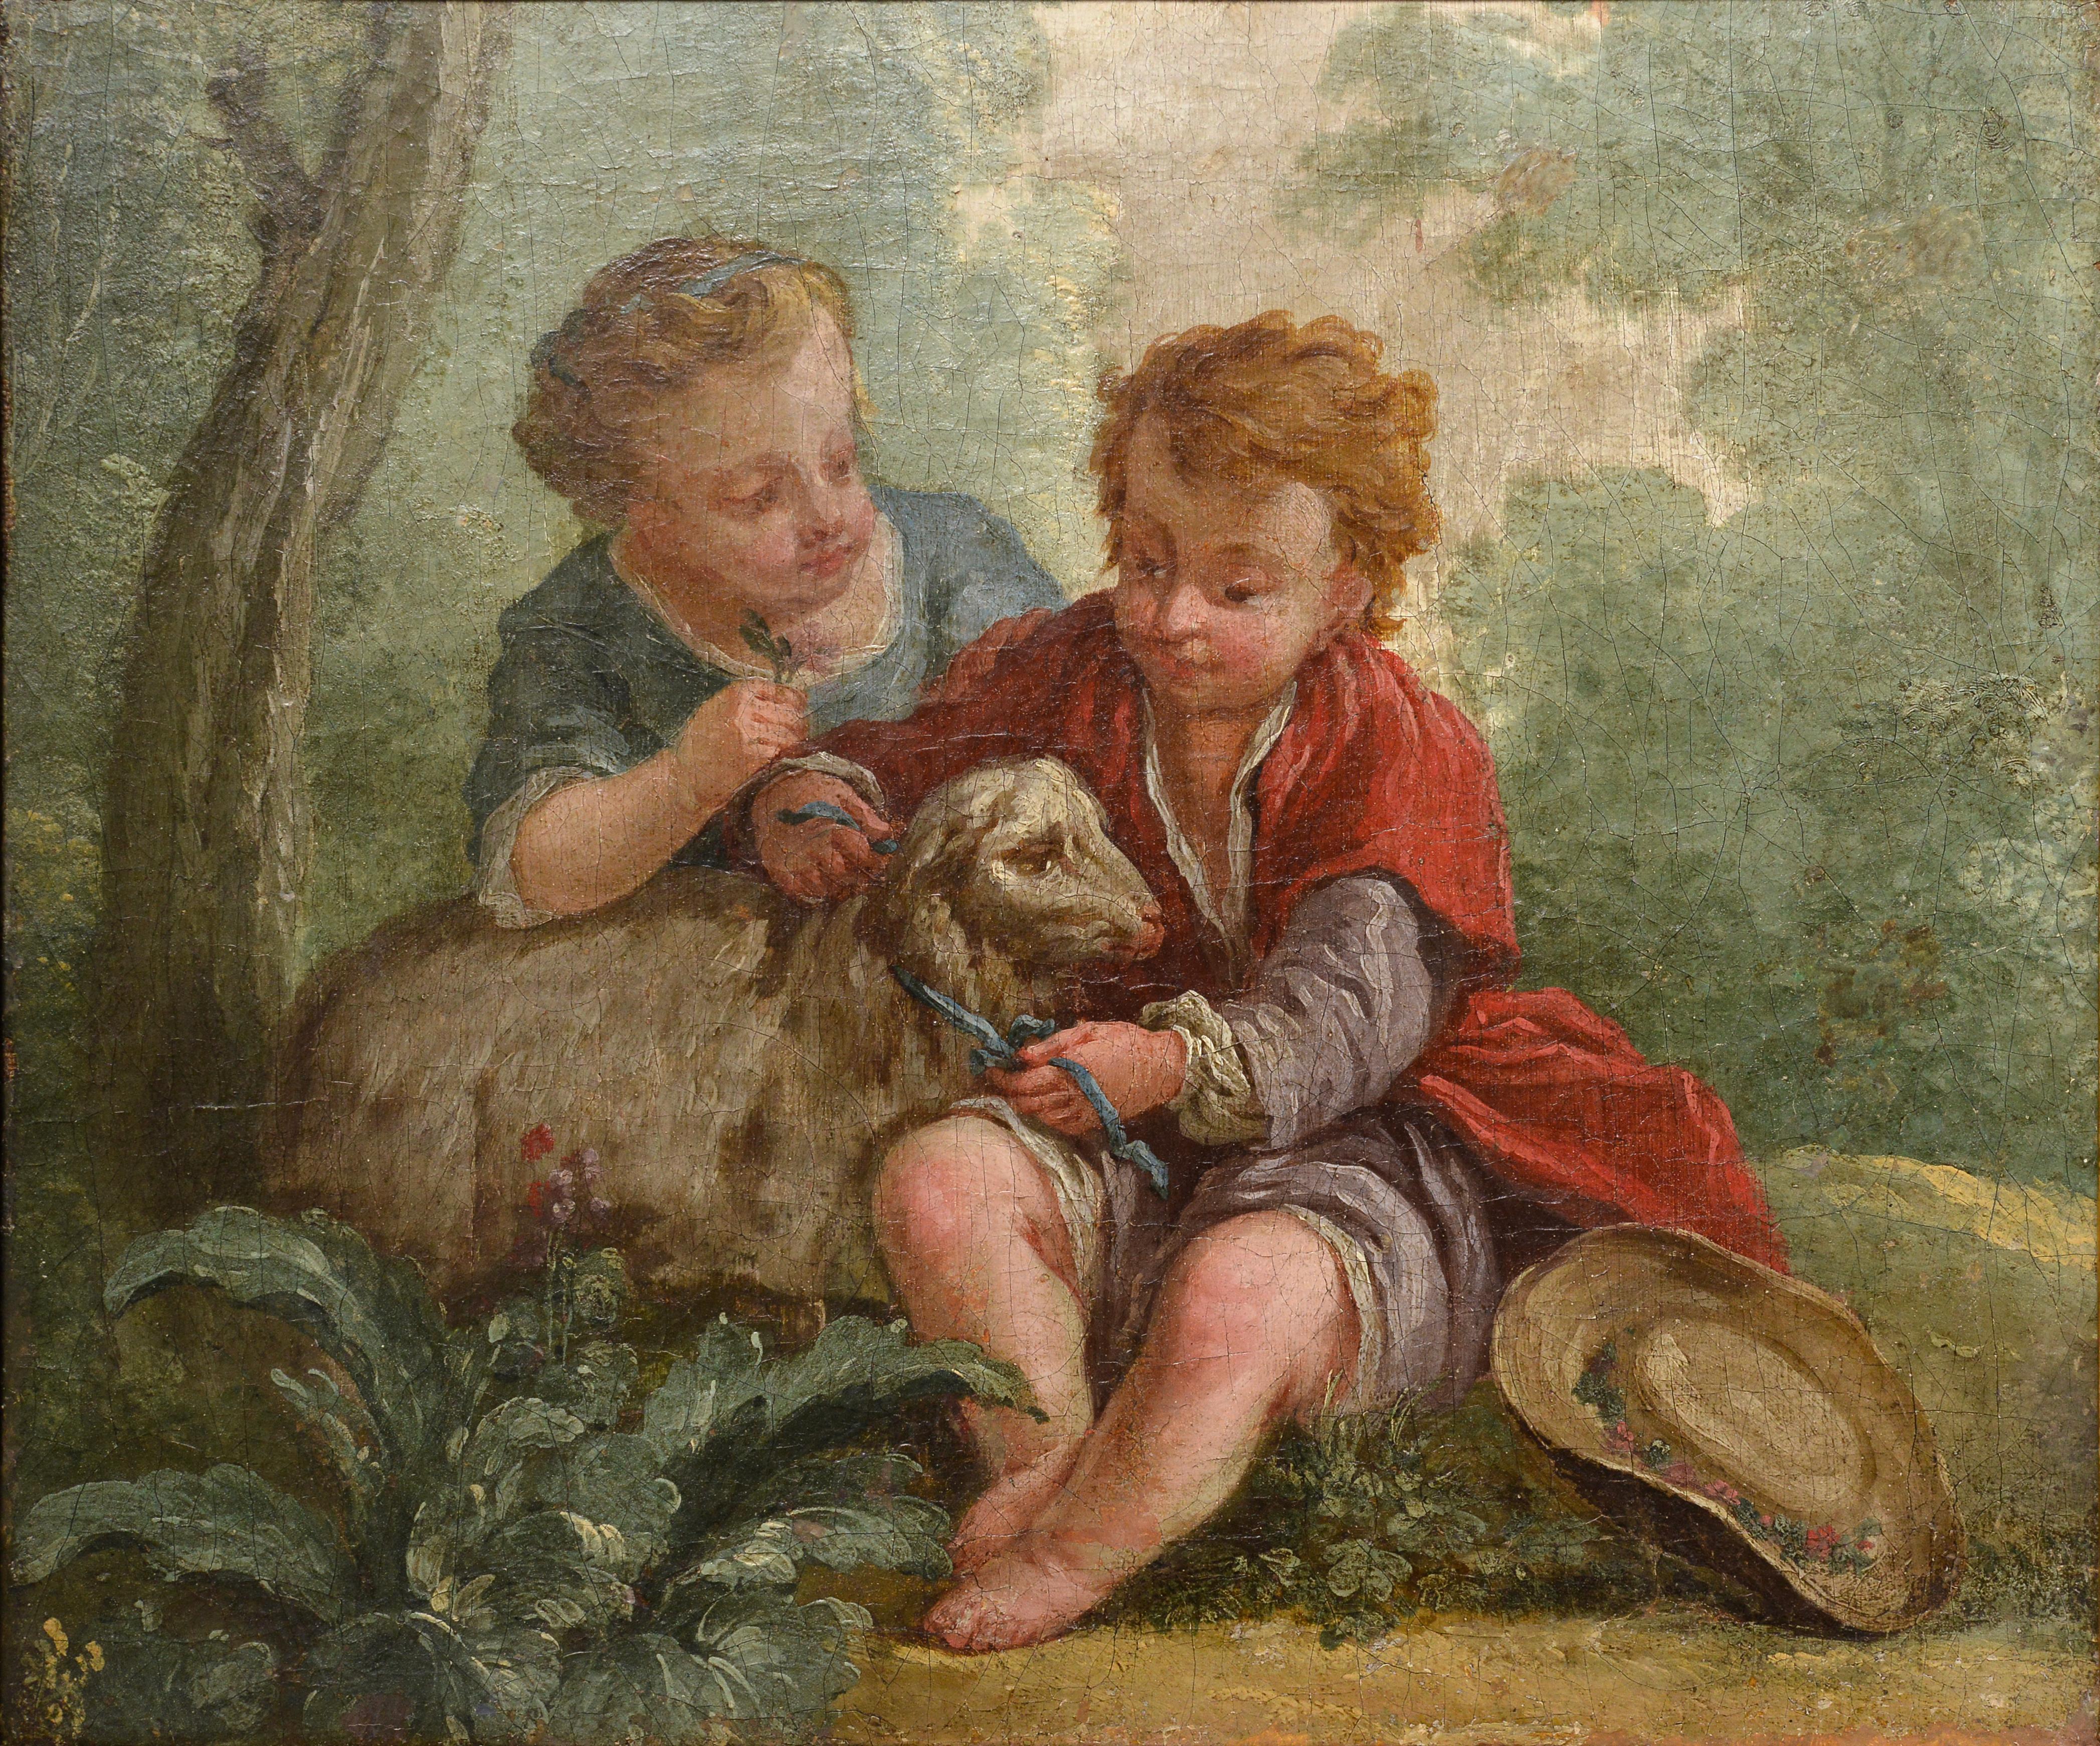 Kinder mit Lammszene, Ölgemälde eines französischen Rokoko-Meisters aus dem 18. Jahrhundert – Painting von Jean Baptist Marie Huet